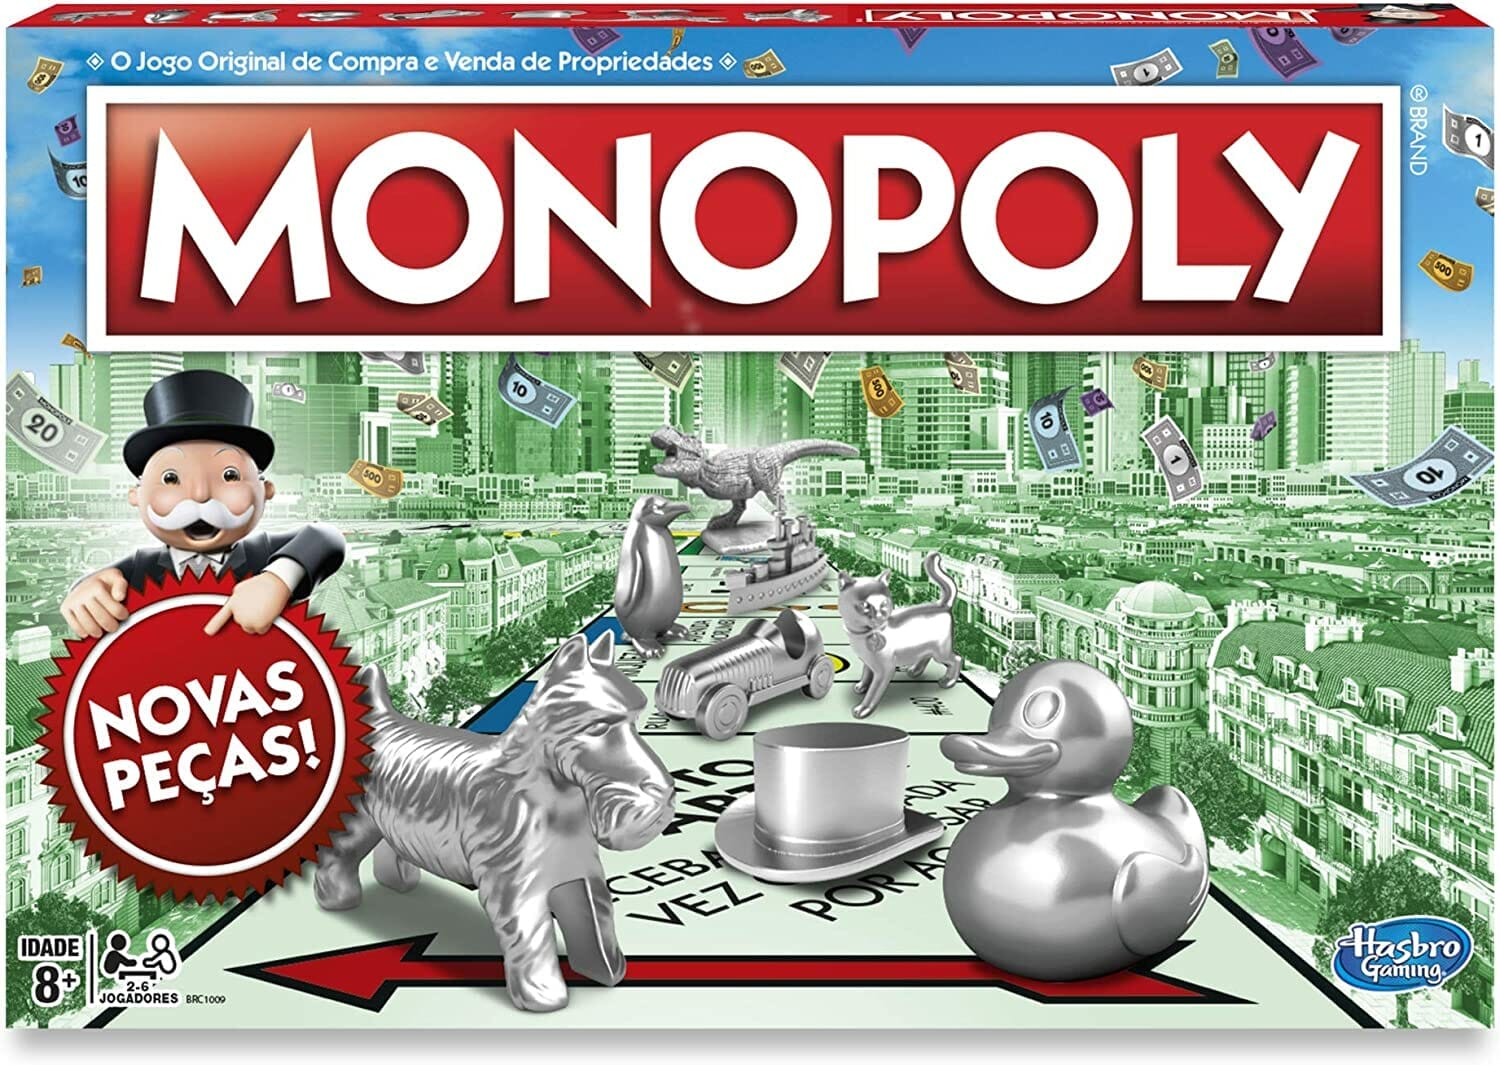 embalagem do jogo monopoly, também conhecido por banco imobiliário